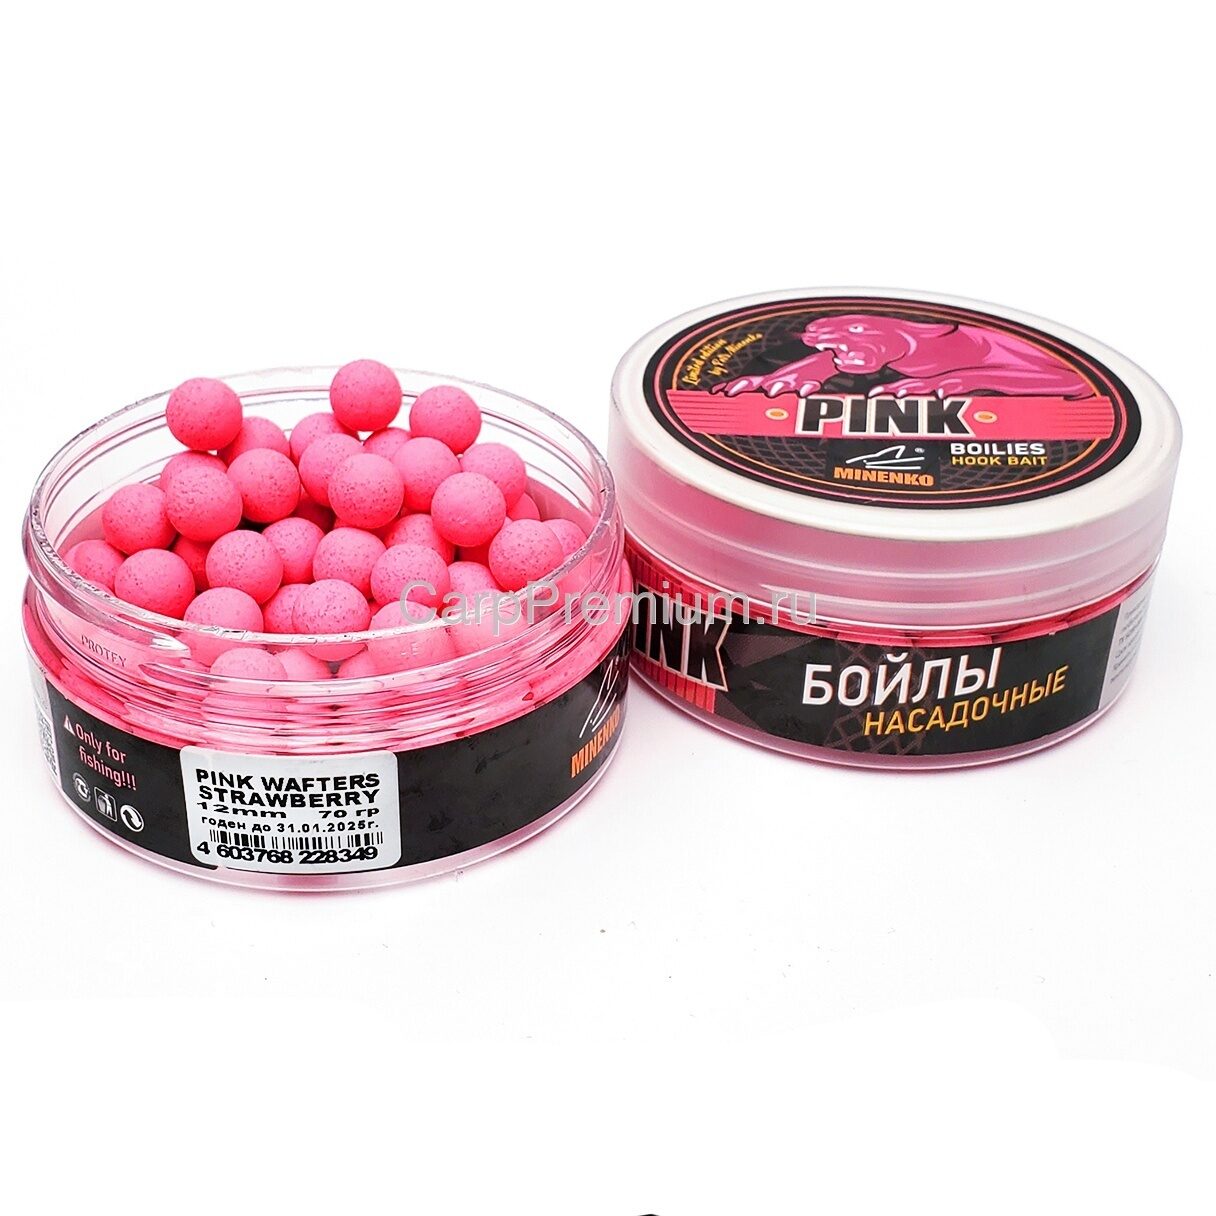 Бойлы нейтральной плавучести 12 мм Клубника Minenko (Миненко) - Pink Wafters Strawberry, 70 г